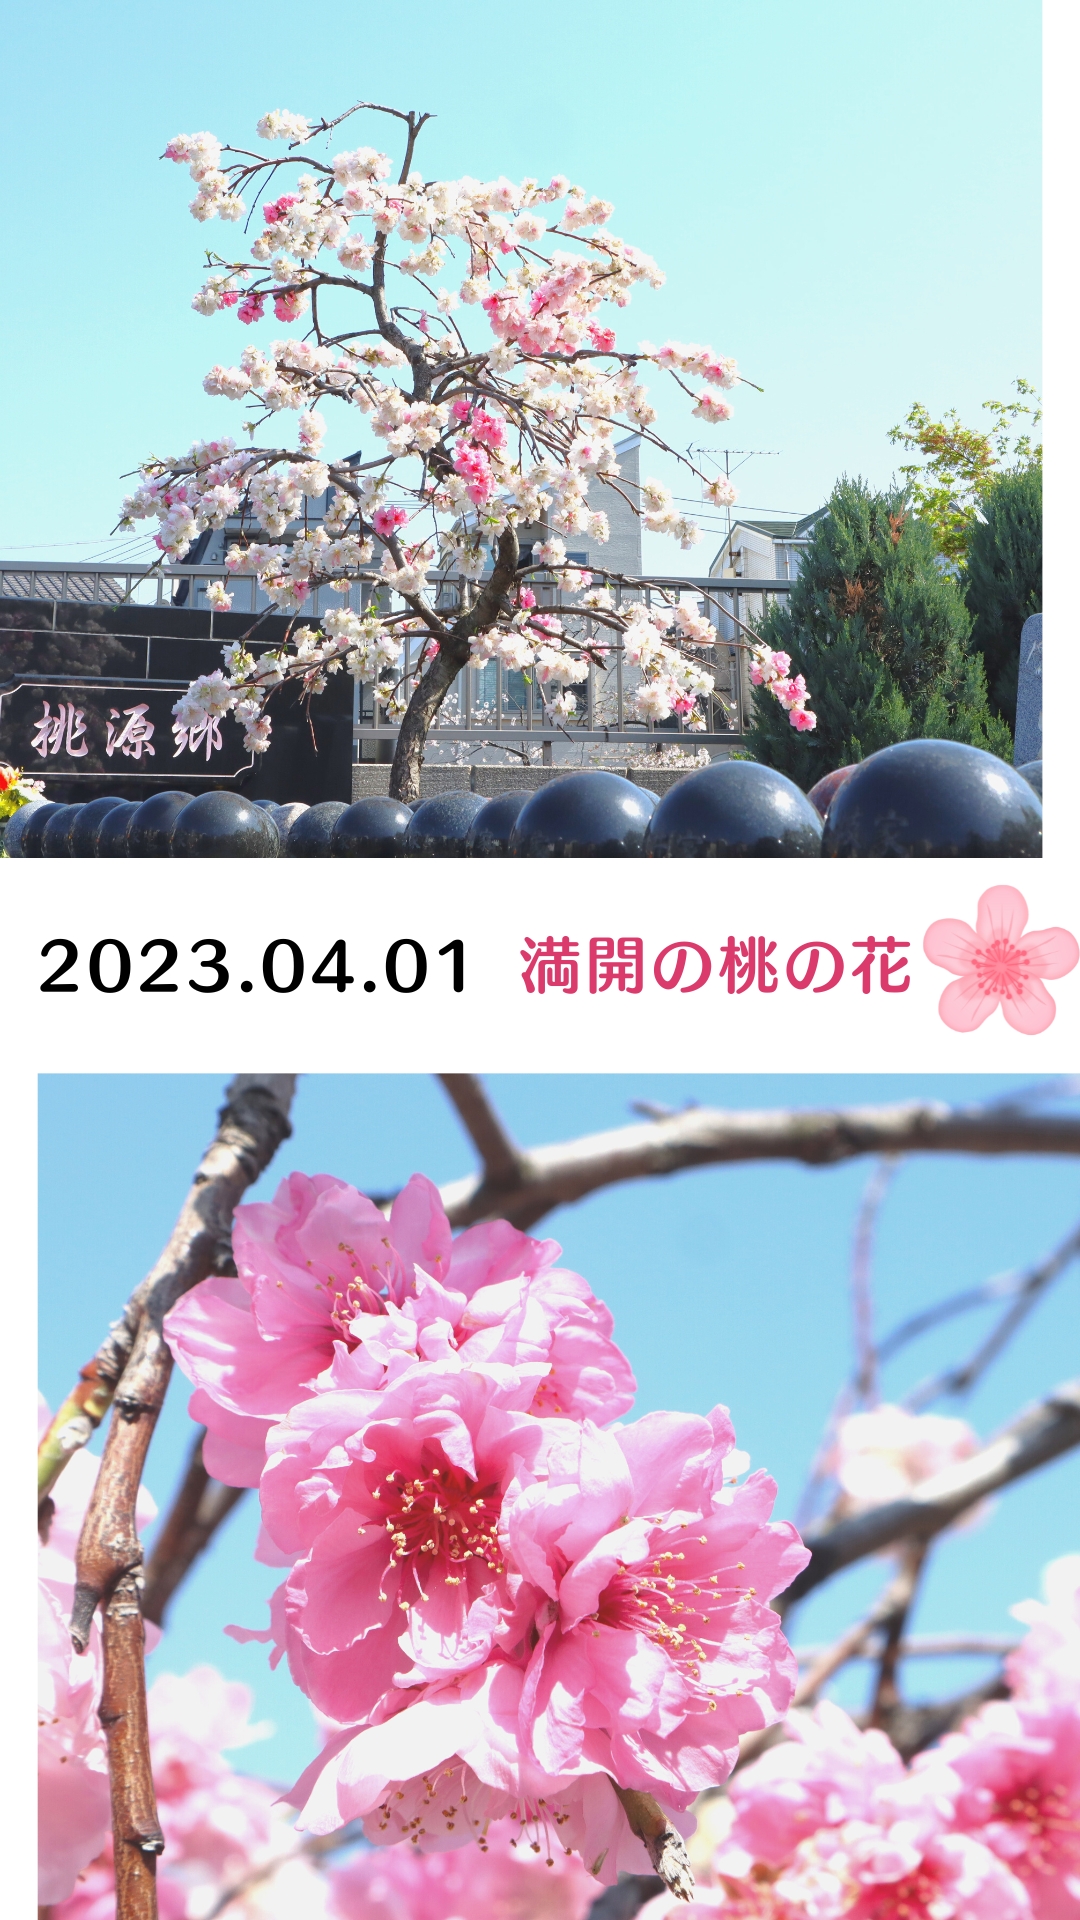 【福壽園】シンボルツリーの桃の木が満開です